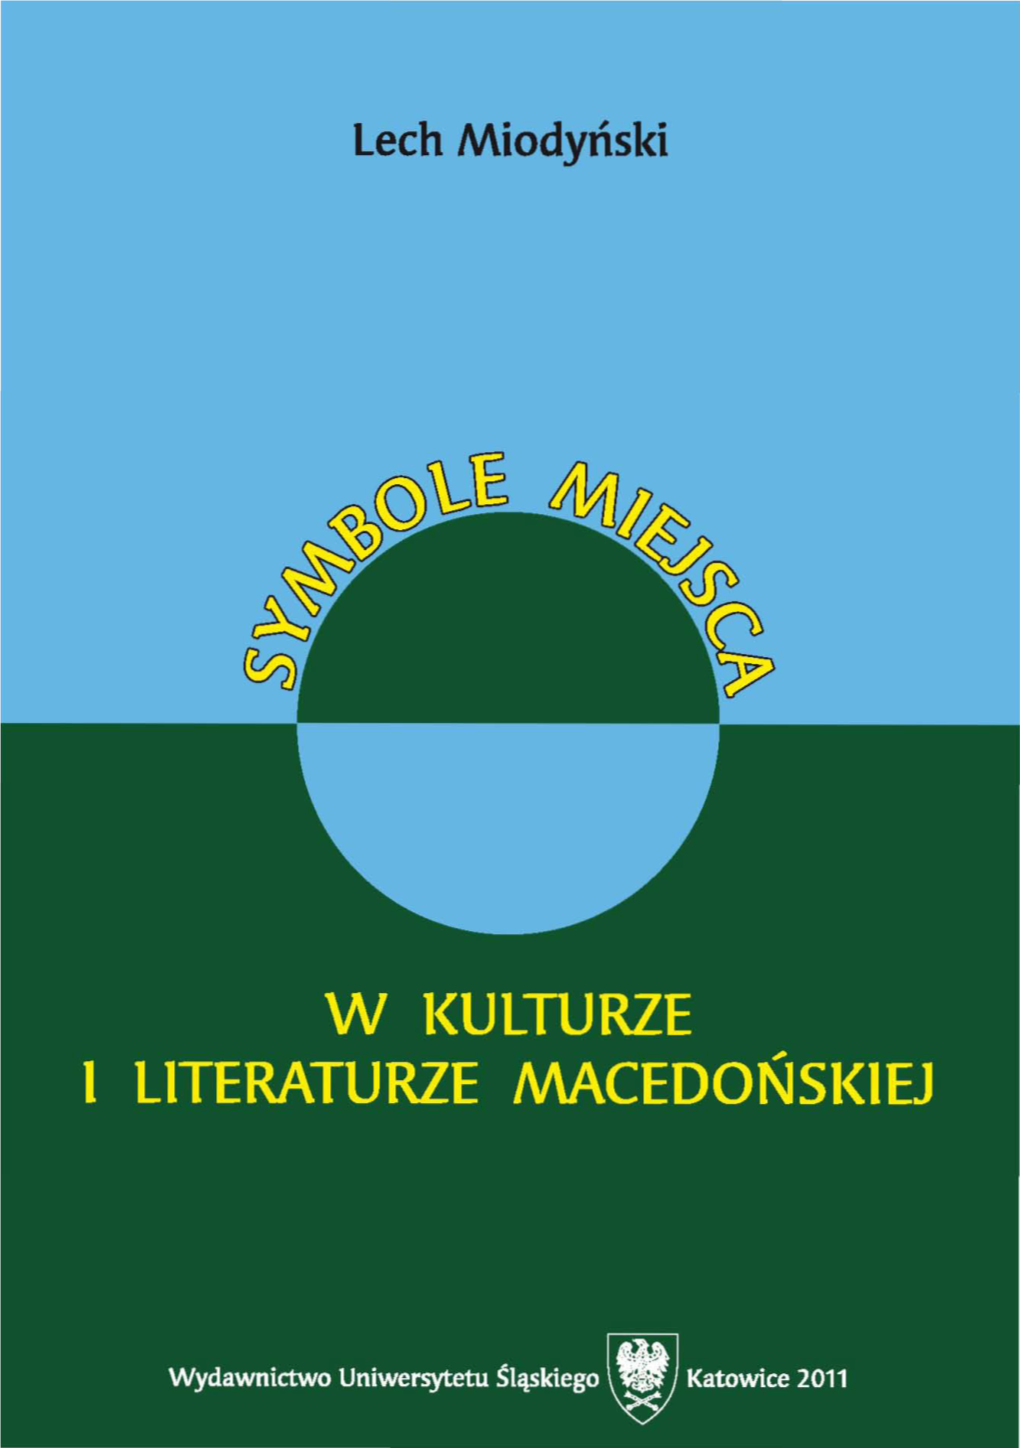 Lech Miodyński Symbole Miejsca W Kulturze I Literaturze Macedońskiej NR 2887 Lech Miodyński